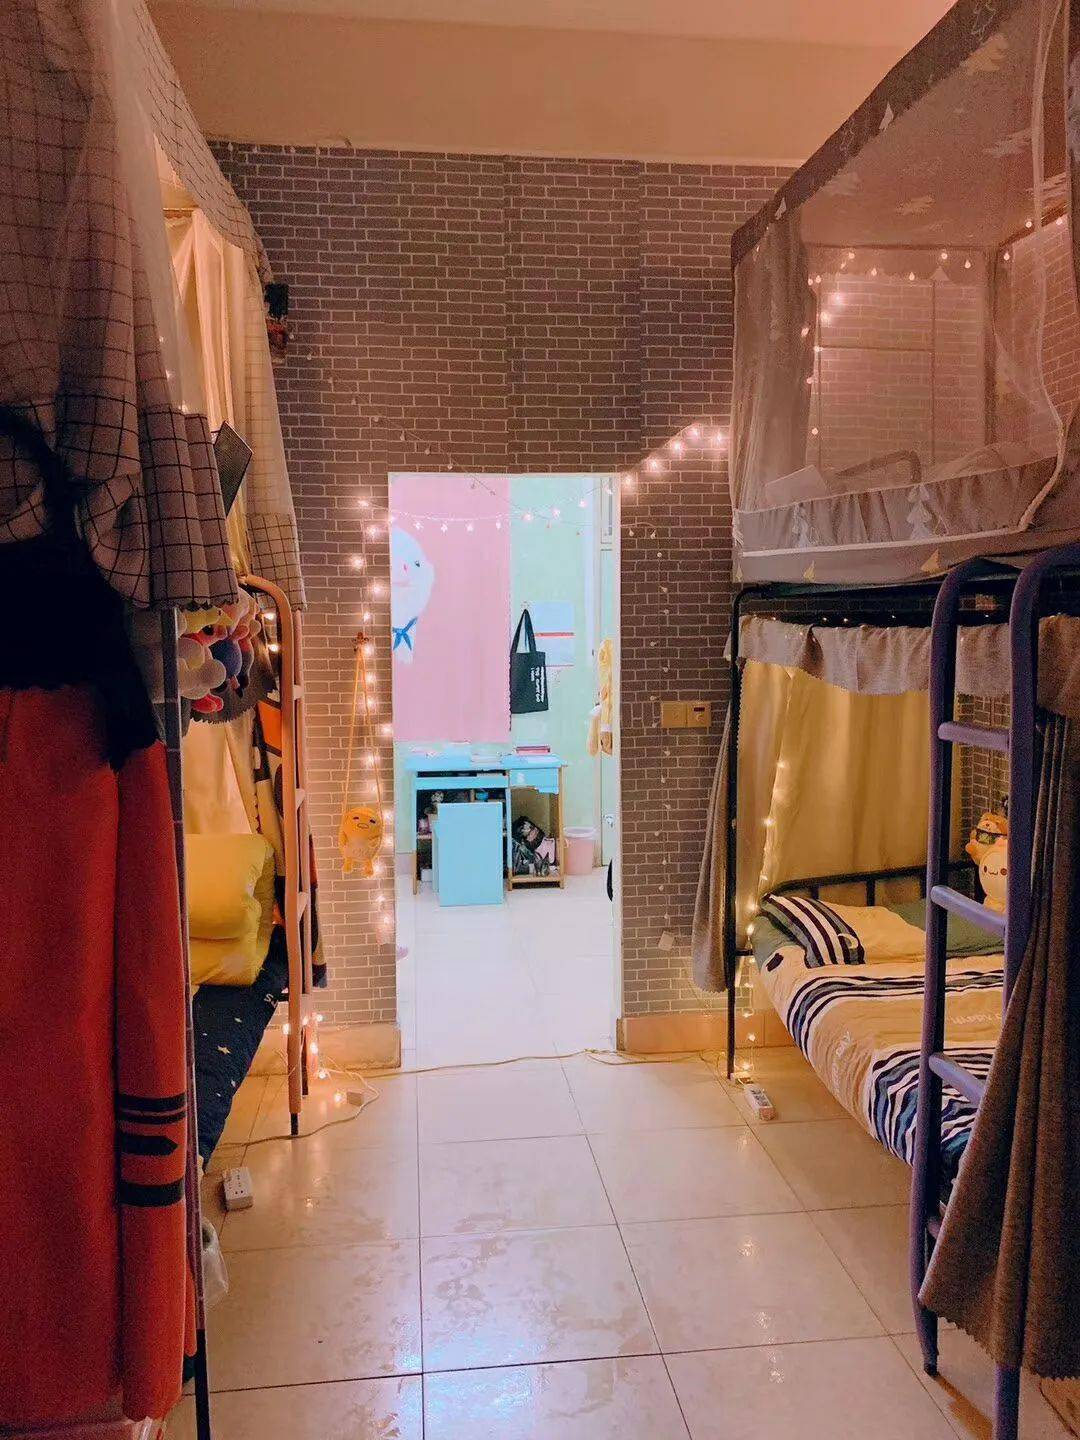 紫荆公寓 女生宿舍图片